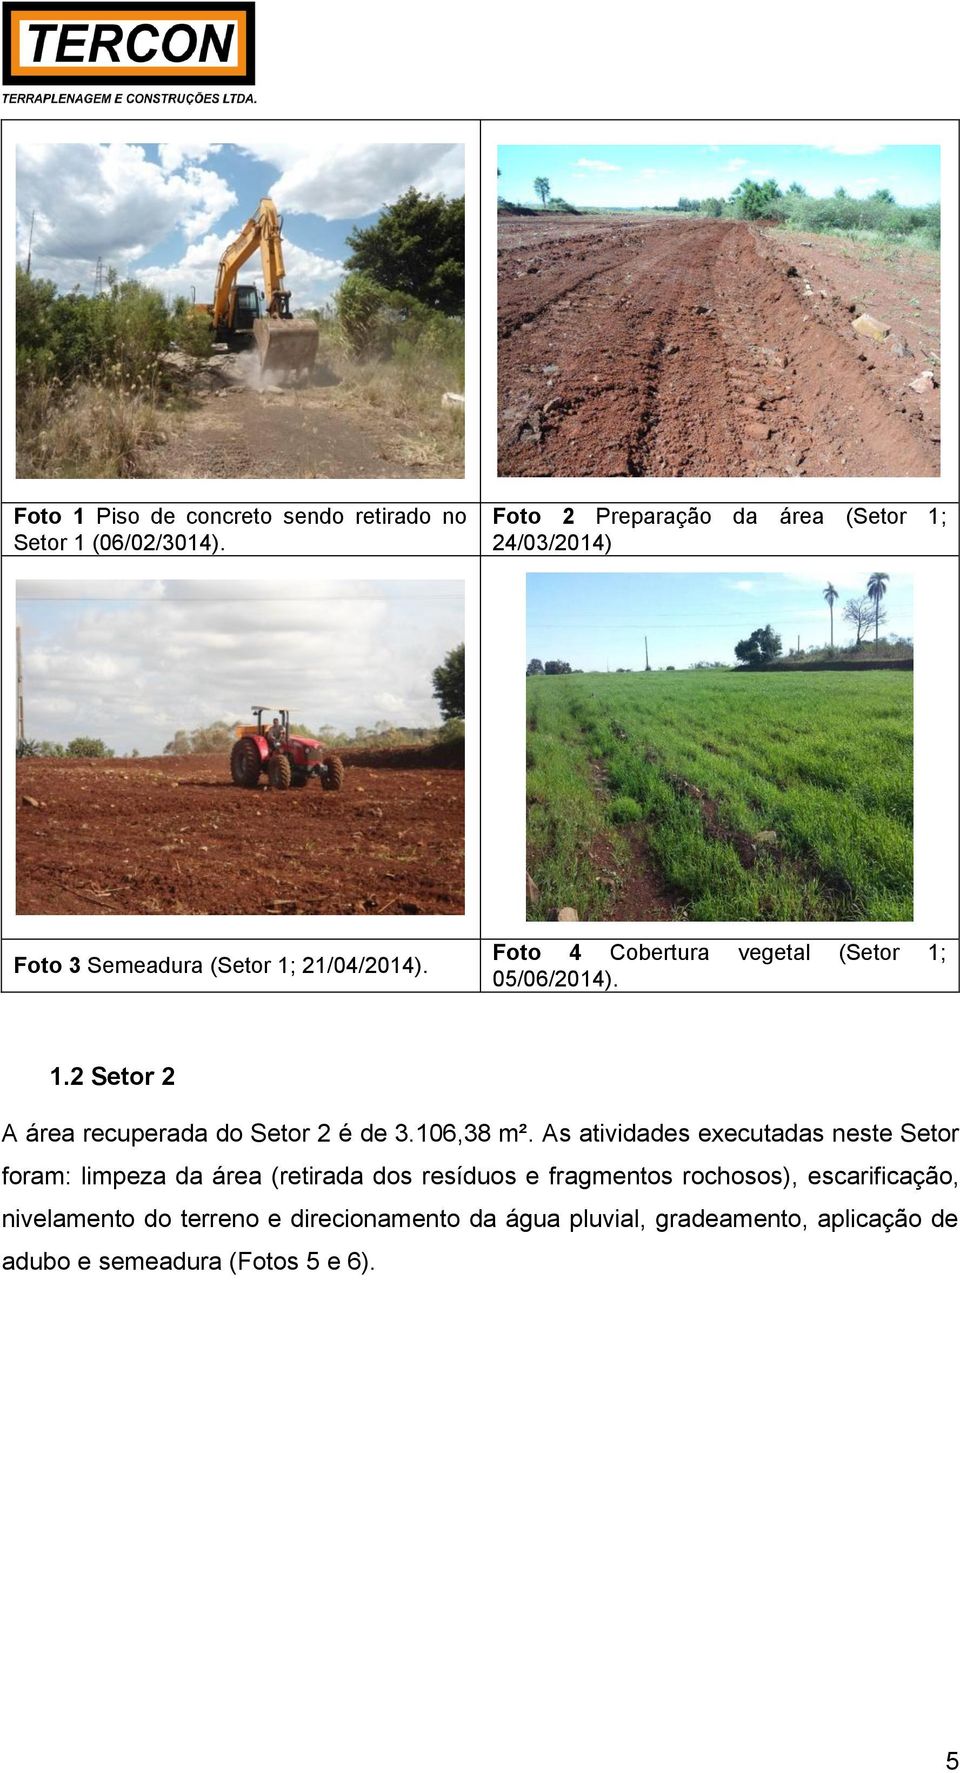 Foto 4 Cobertura vegetal (Setor 1; 05/06/2014). 1.2 Setor 2 A área recuperada do Setor 2 é de 3.106,38 m².